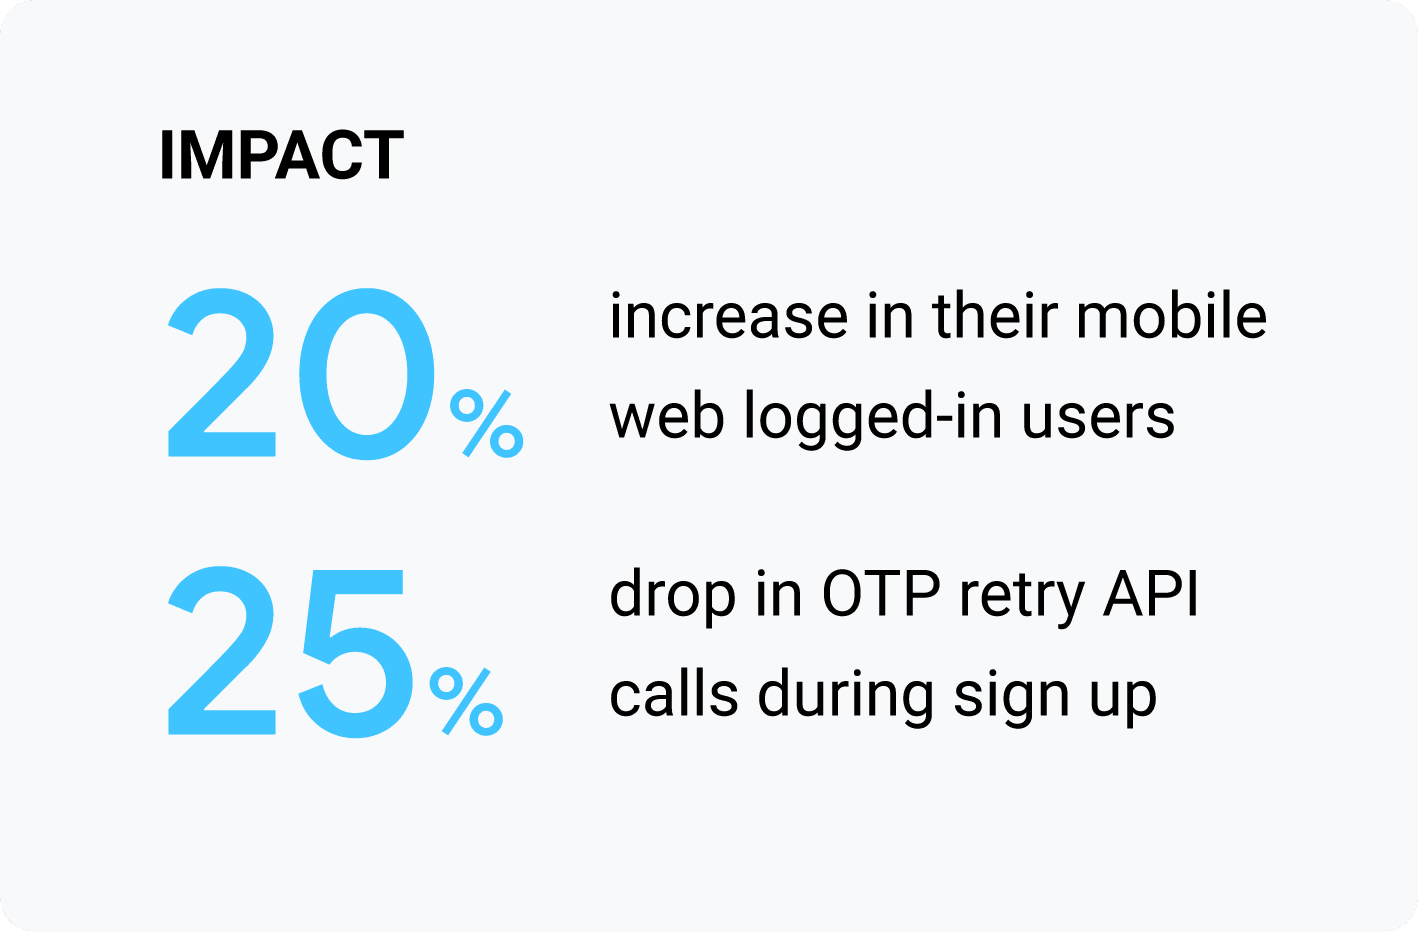 ההשפעה: עלייה של 20% במספר המשתמשים שמחוברים לאינטרנט לנייד; ירידה של 25% במספר הקריאות ל-API של OTP במהלך ההרשמה.